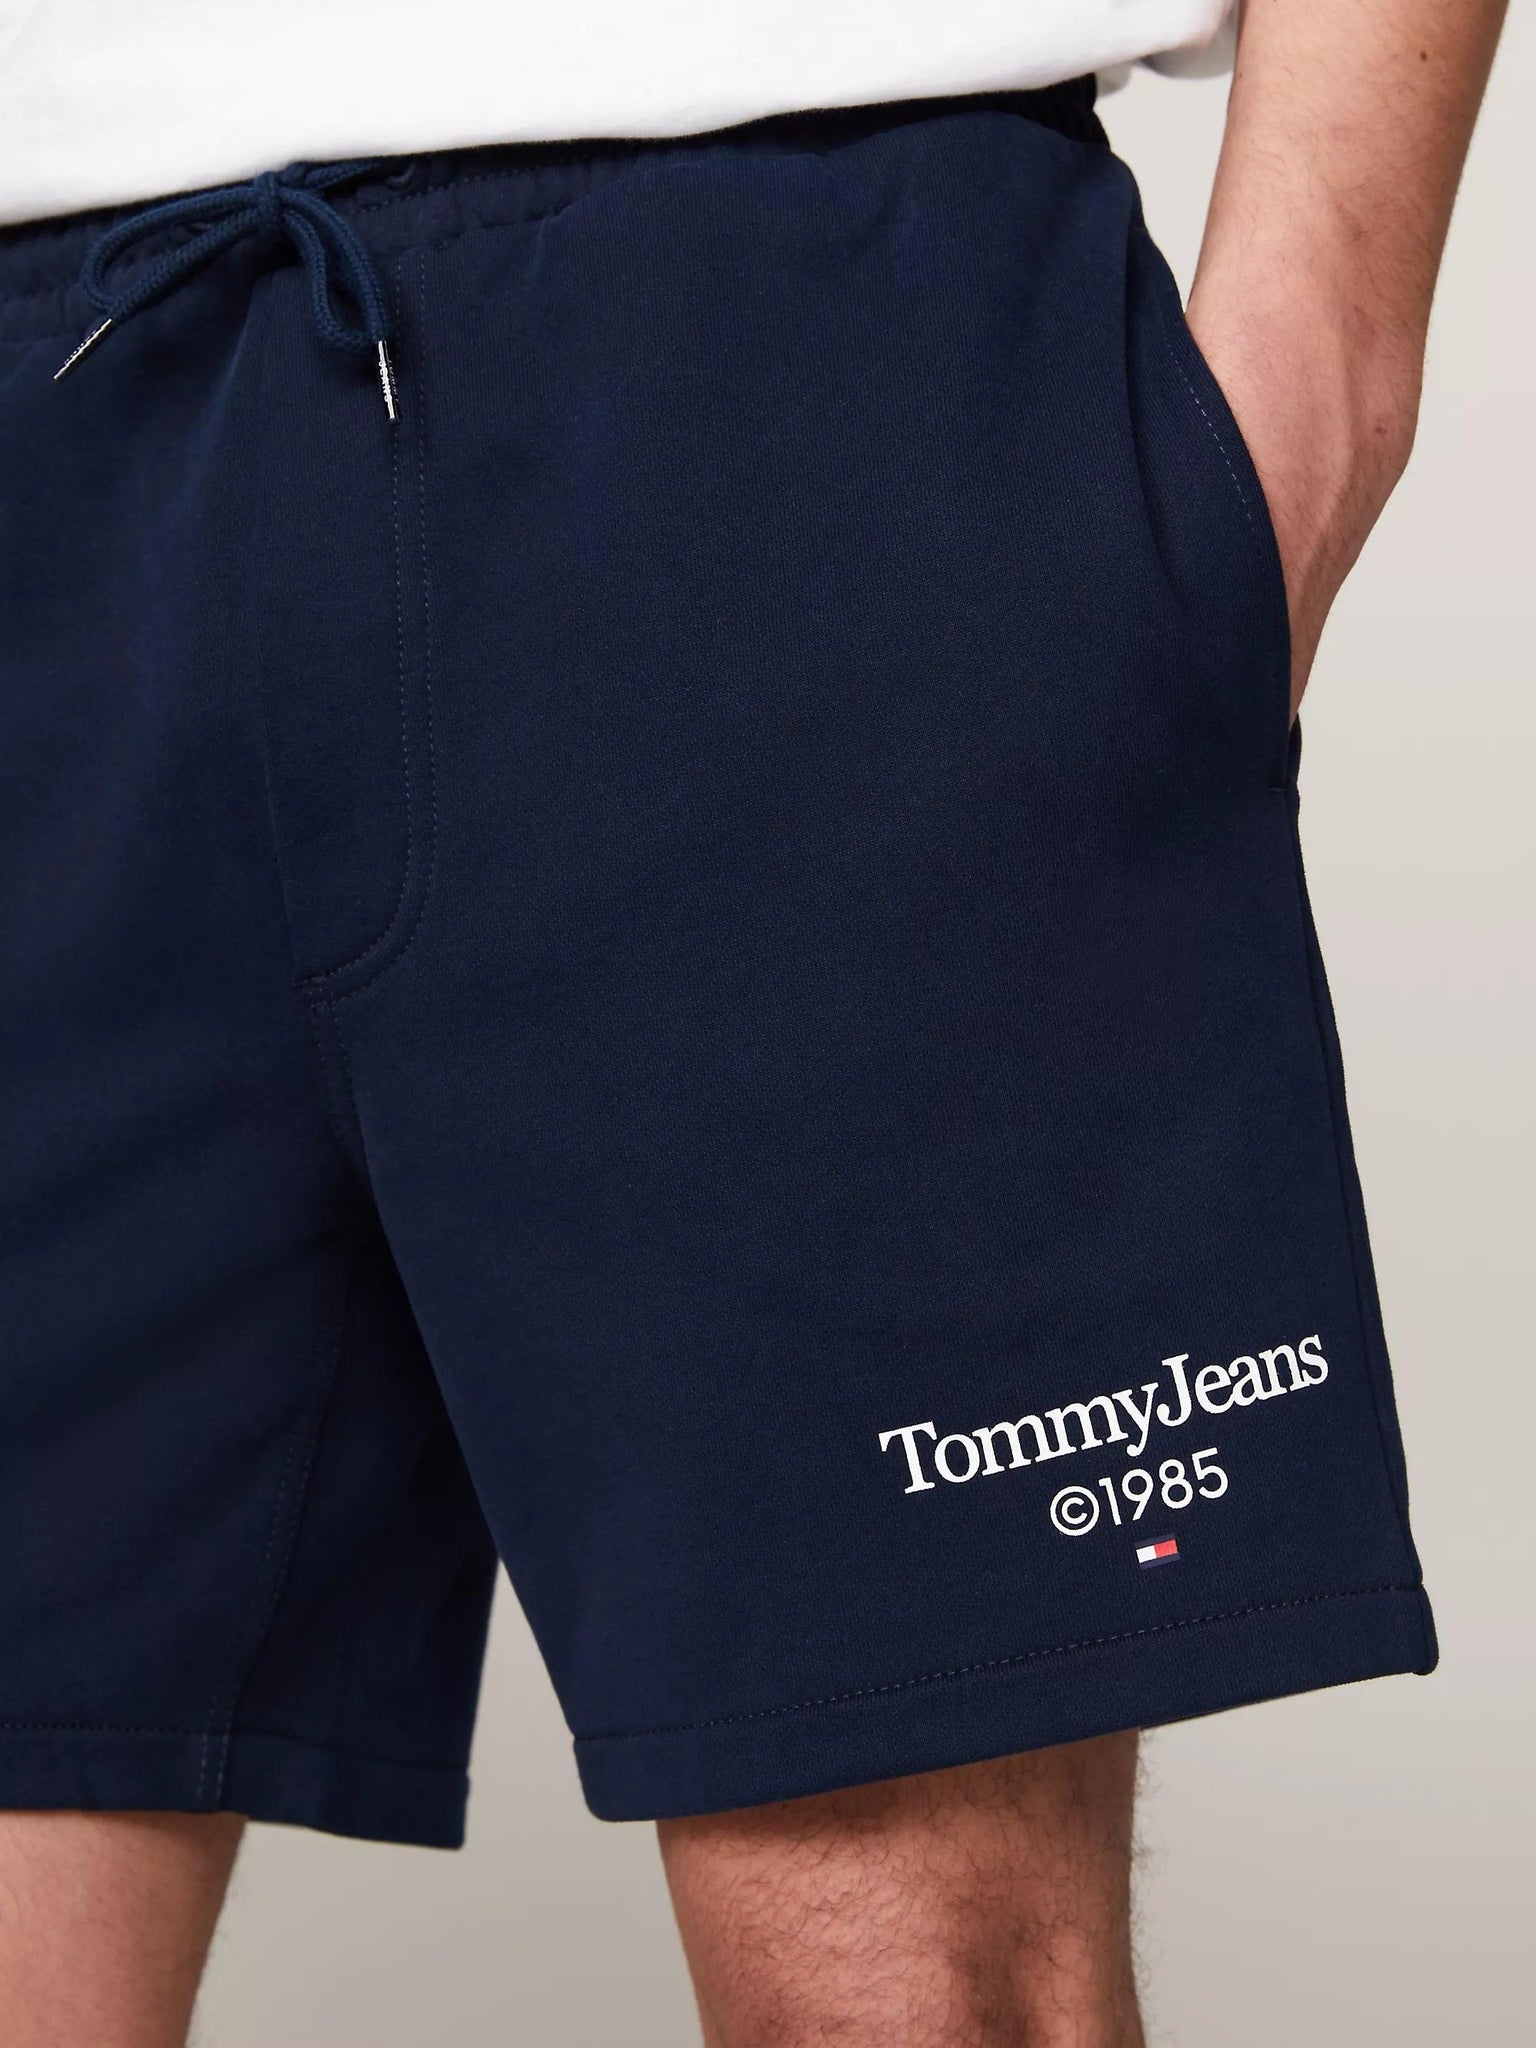 Pantalón Tommy Jeans Corto de Deporte con Logo Gráfico - ECRU